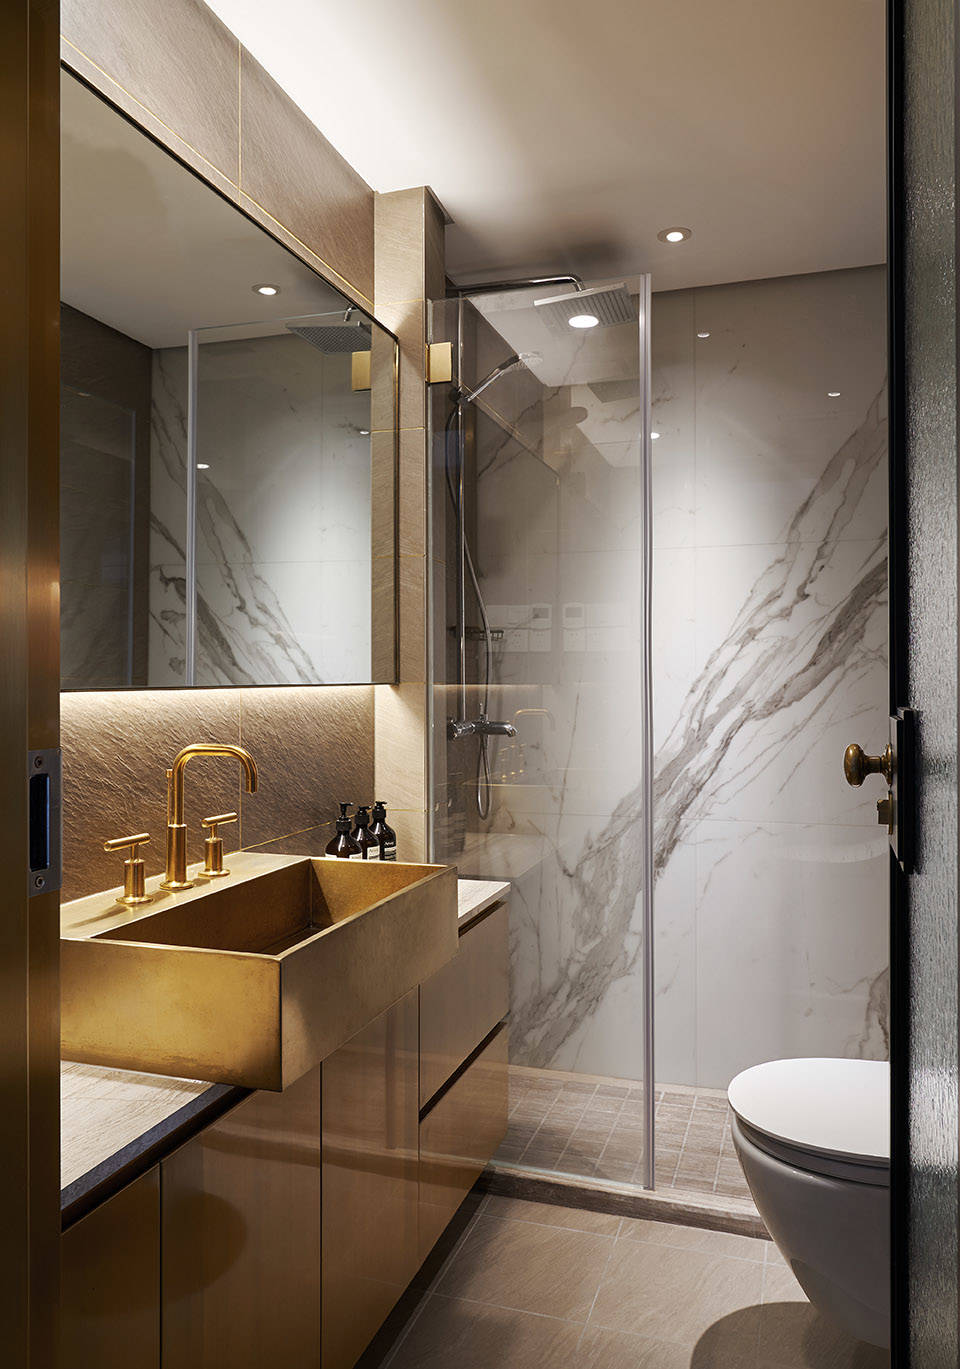 卫浴空间温馨典雅，独特的干湿分离设计装饰演绎得淋漓尽致，轻奢氛围浓郁。